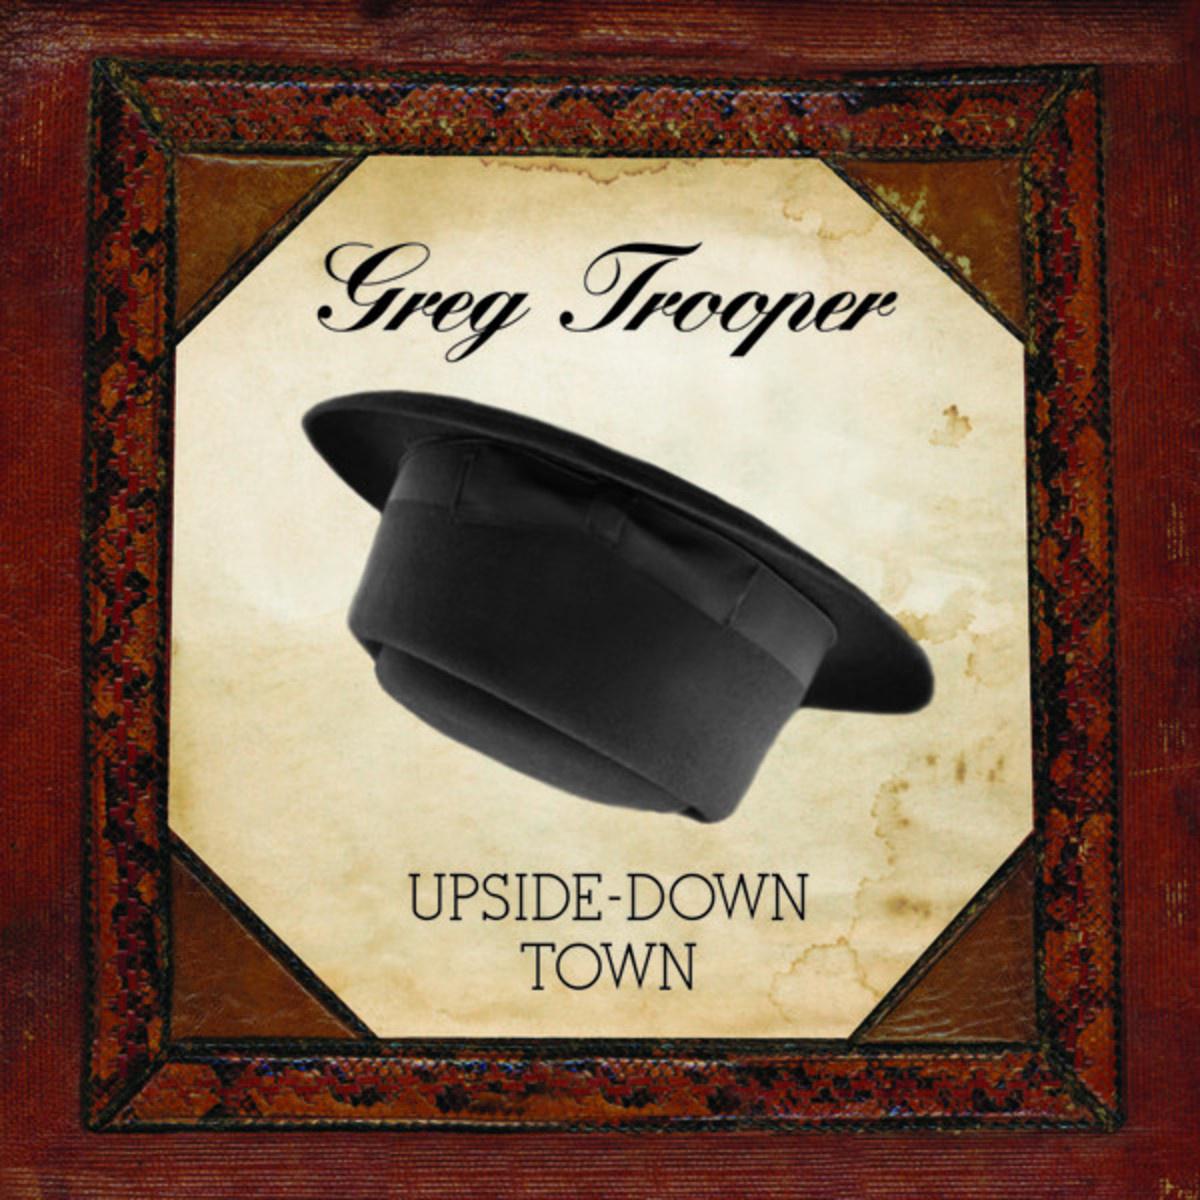 Greg Trooper - We've Still Got Time